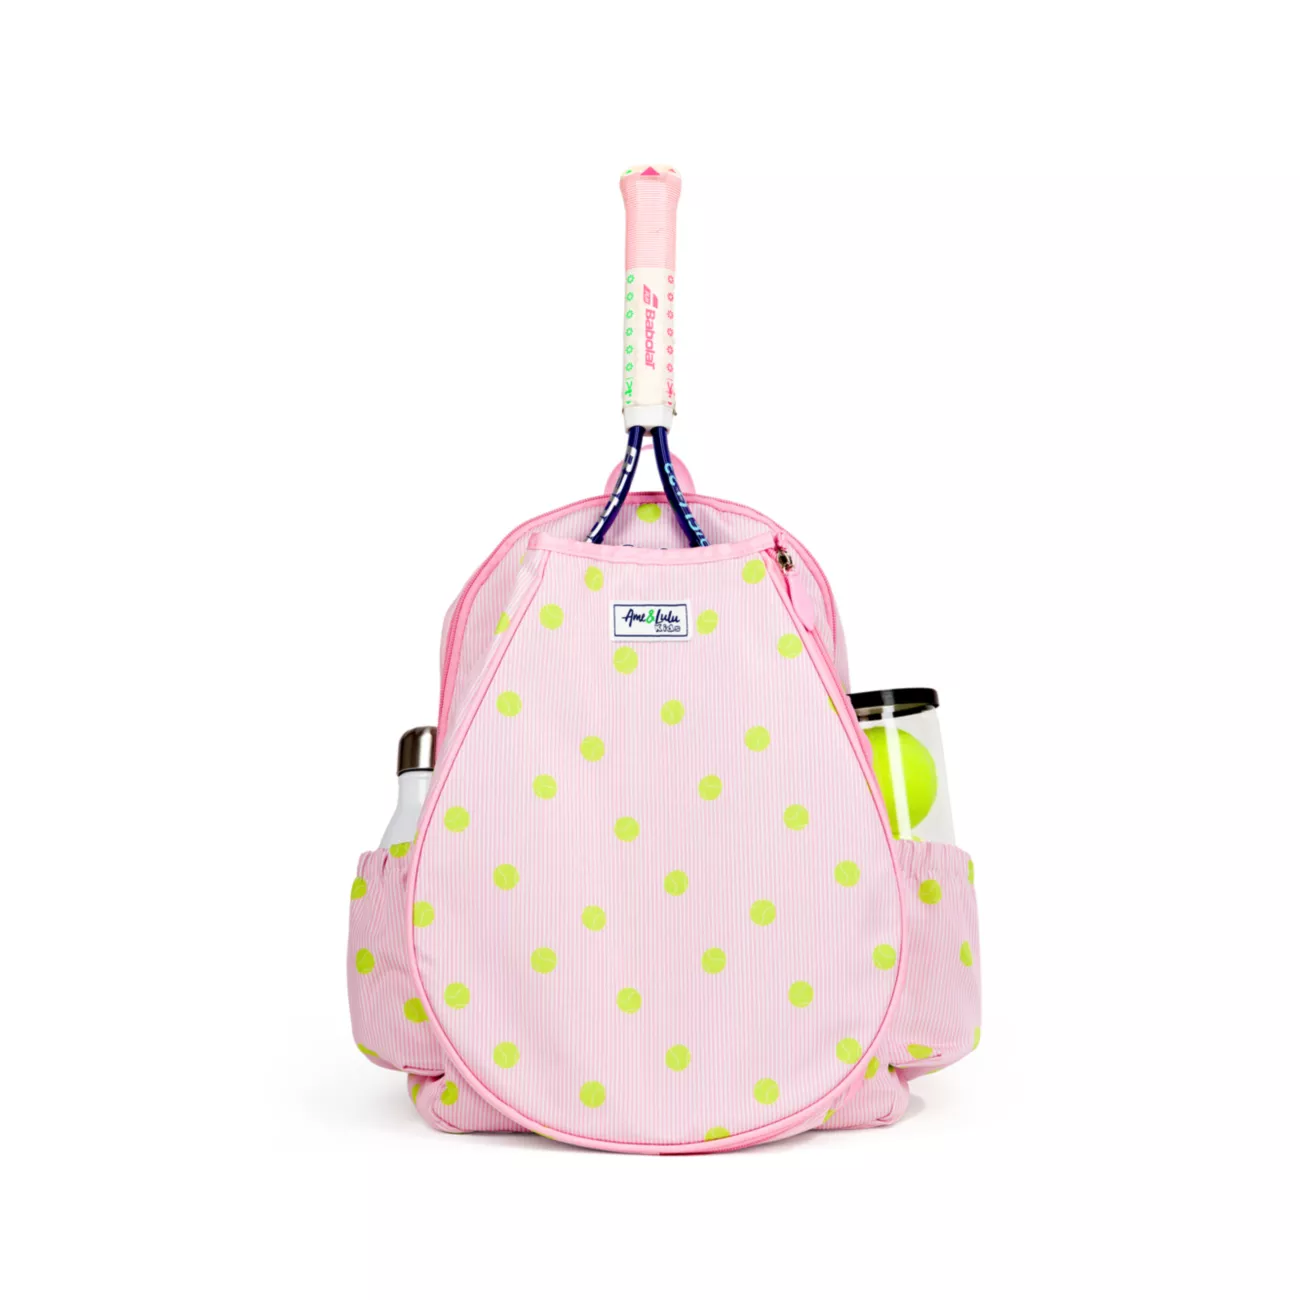 Теннисный рюкзак Little Love для маленькой девочки Ame & Lulu